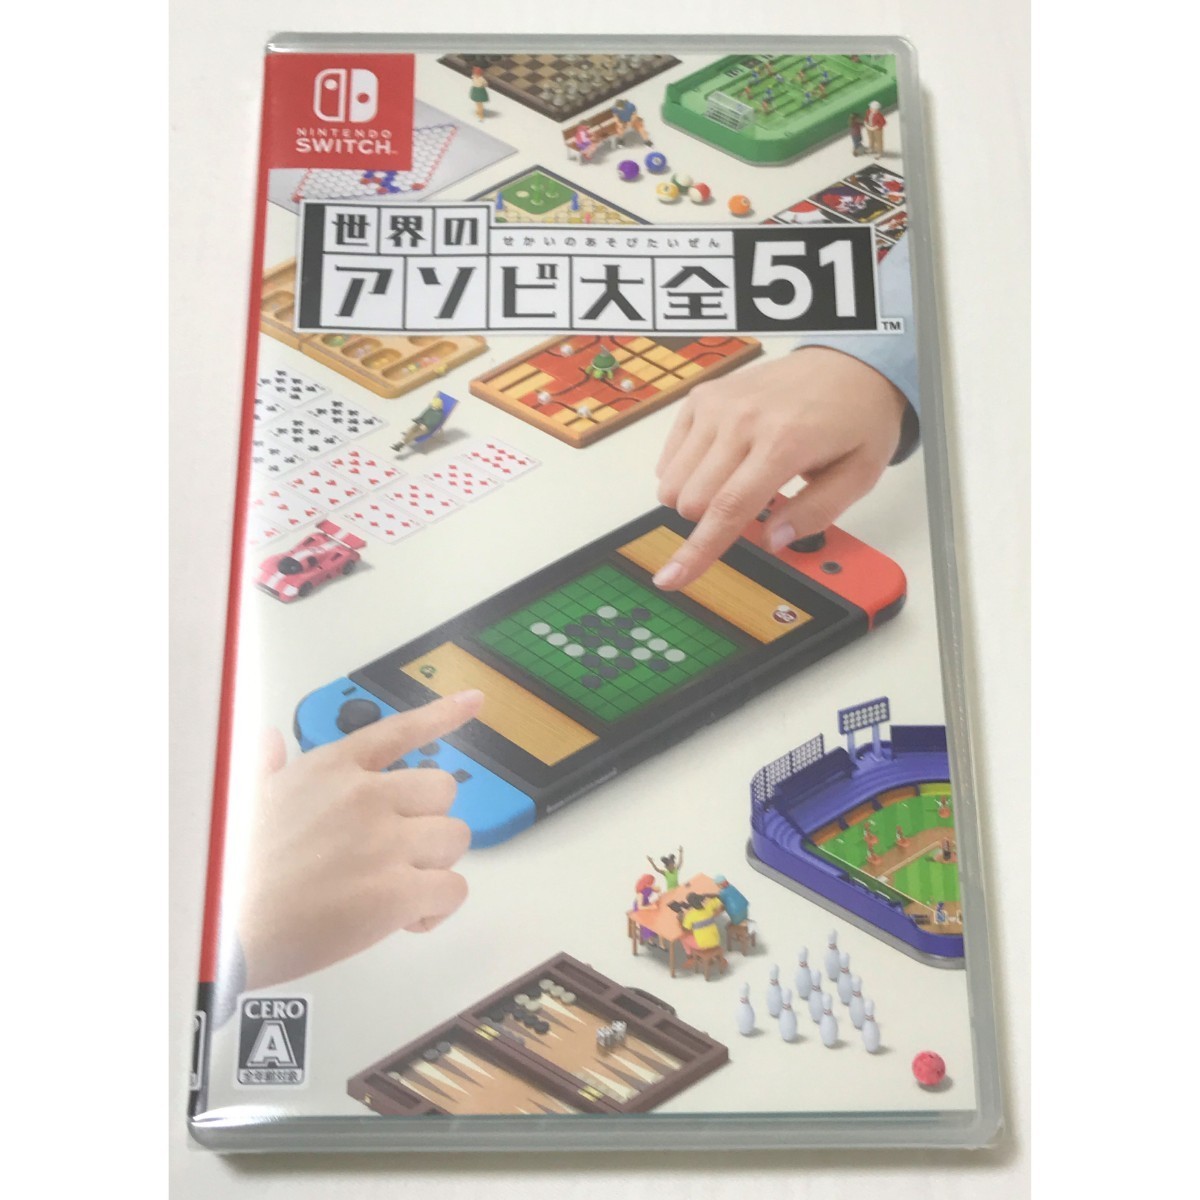 【新品未開封】セット 世界のアソビ大全51 / Nintendo Switch カードケース(8枚収納)